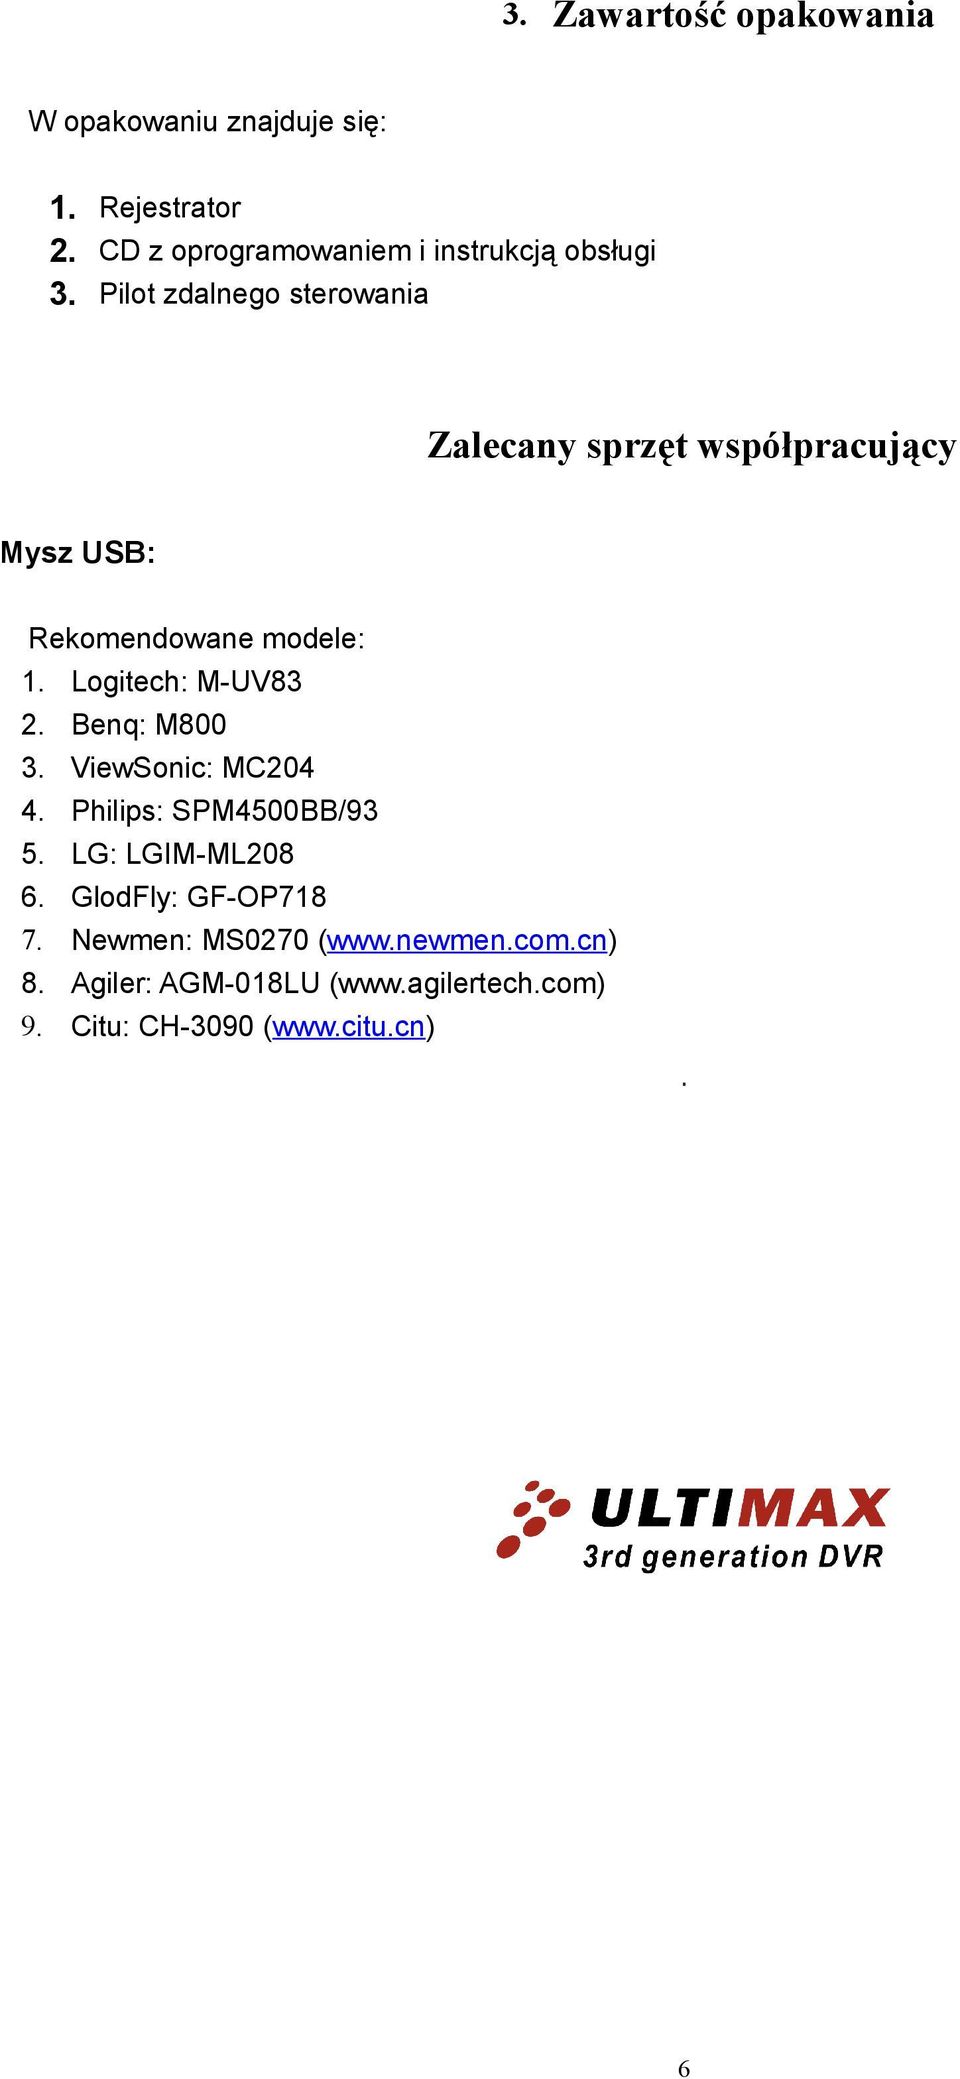 Rejestrator sieciowy (Net DVR) ULTIMAX Instrukcja obsługi Dotyczy modeli:  ULTIMAX-204 ULTIMAX PDF Free Download